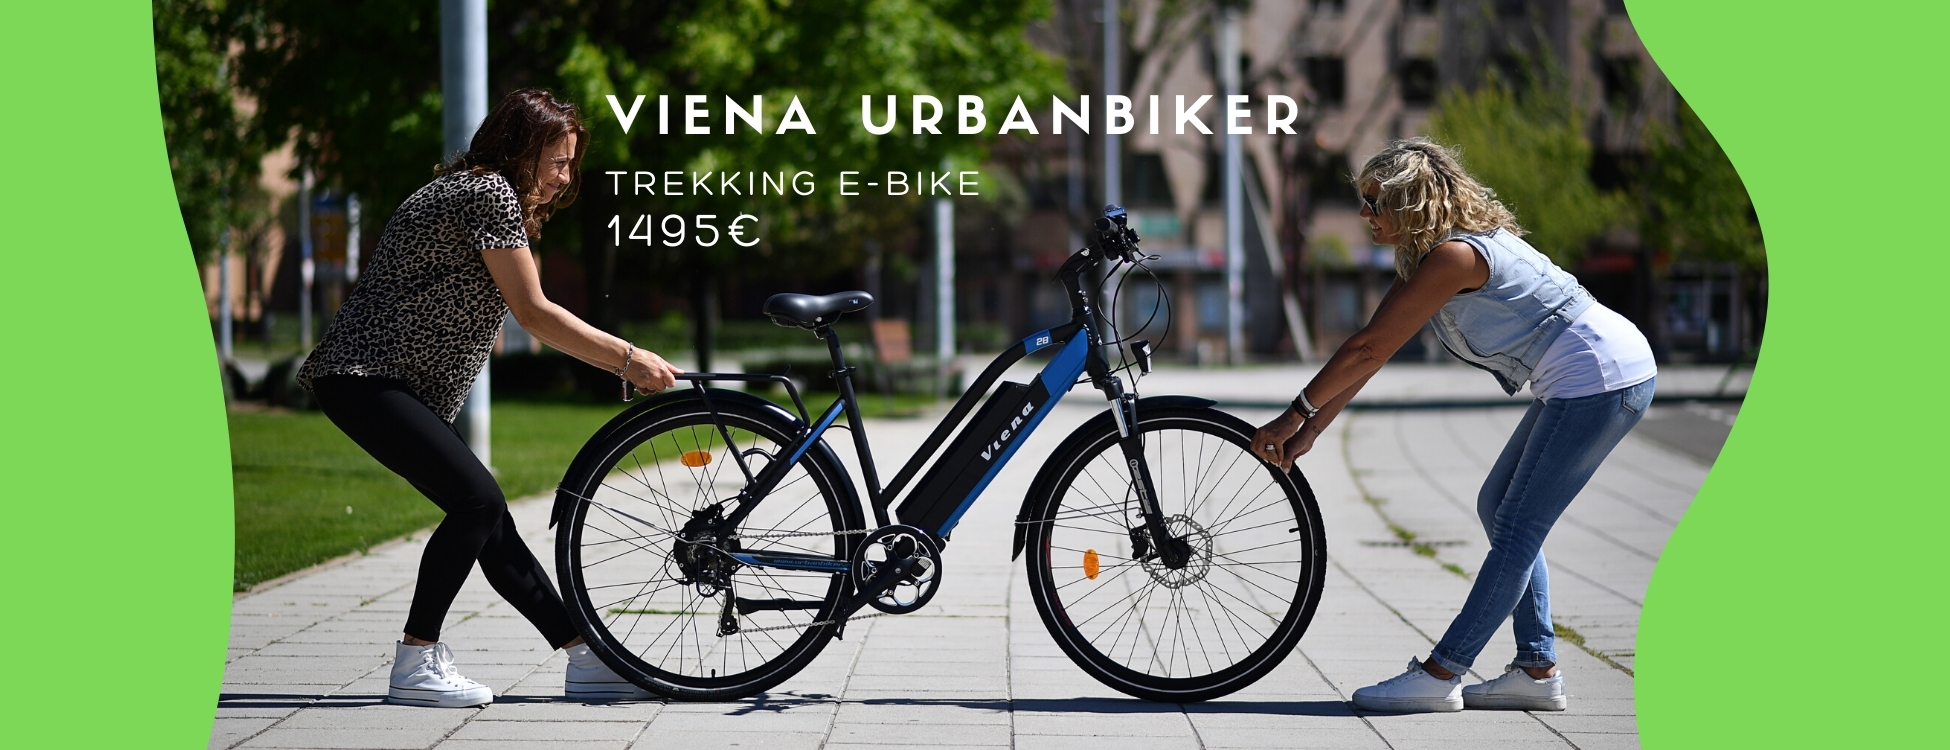 Viena Urbanbiker